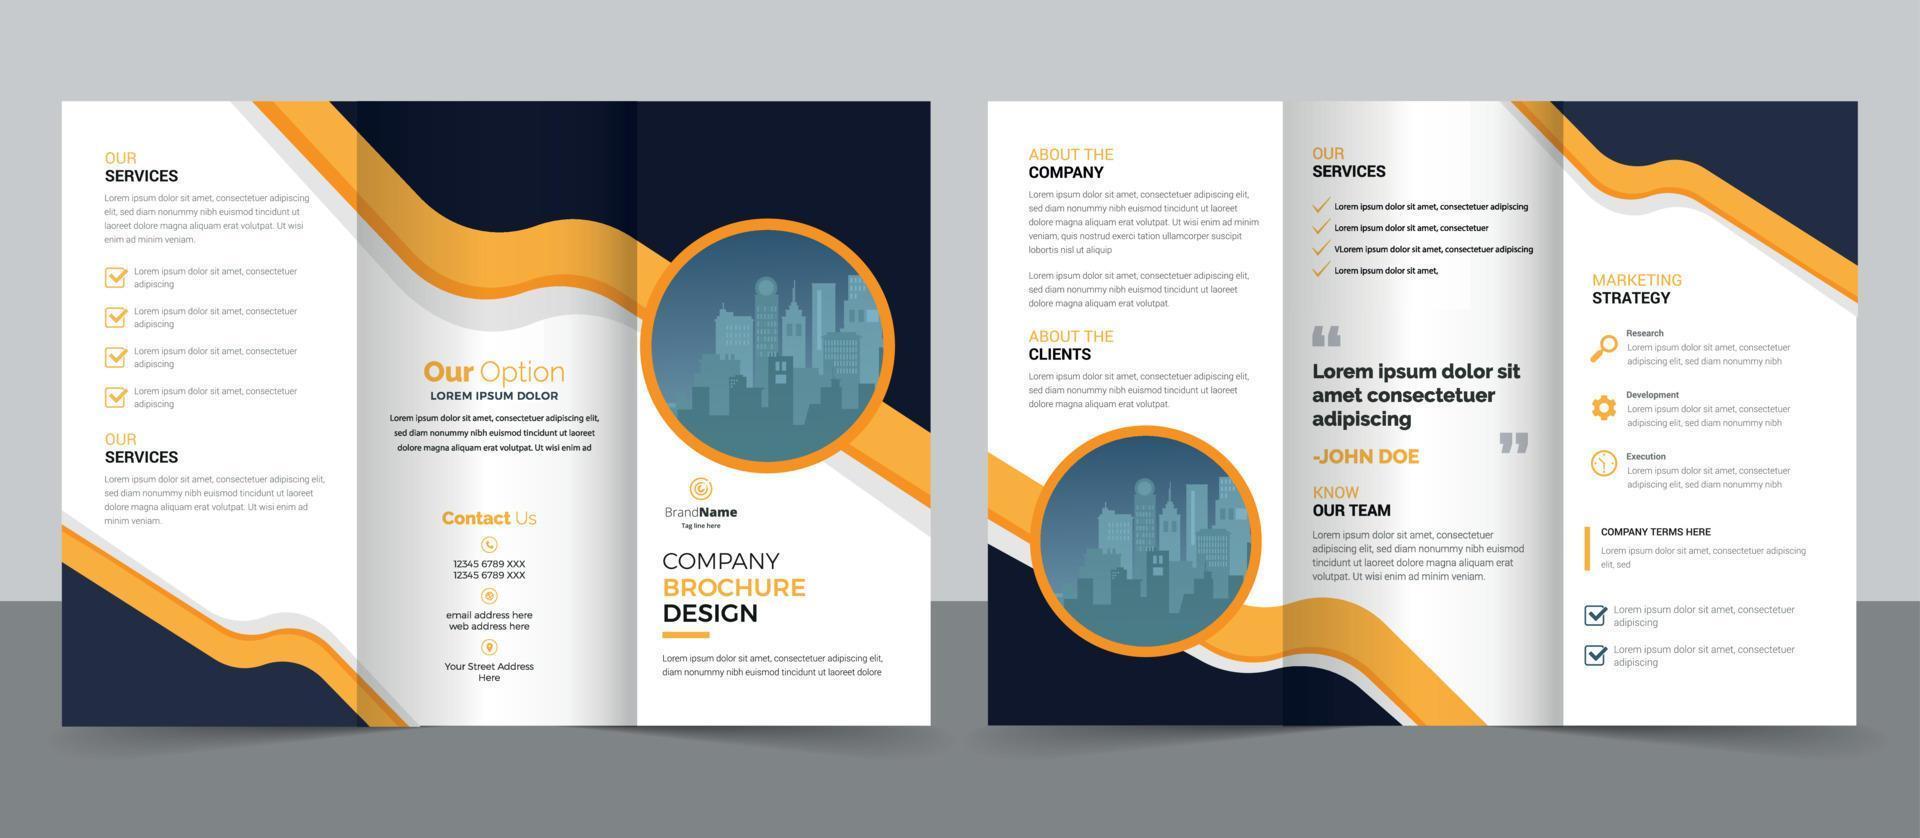 plantilla de diseño de folleto tríptico para su empresa, empresa, negocios, publicidad, marketing, agencia y negocios en Internet. vector